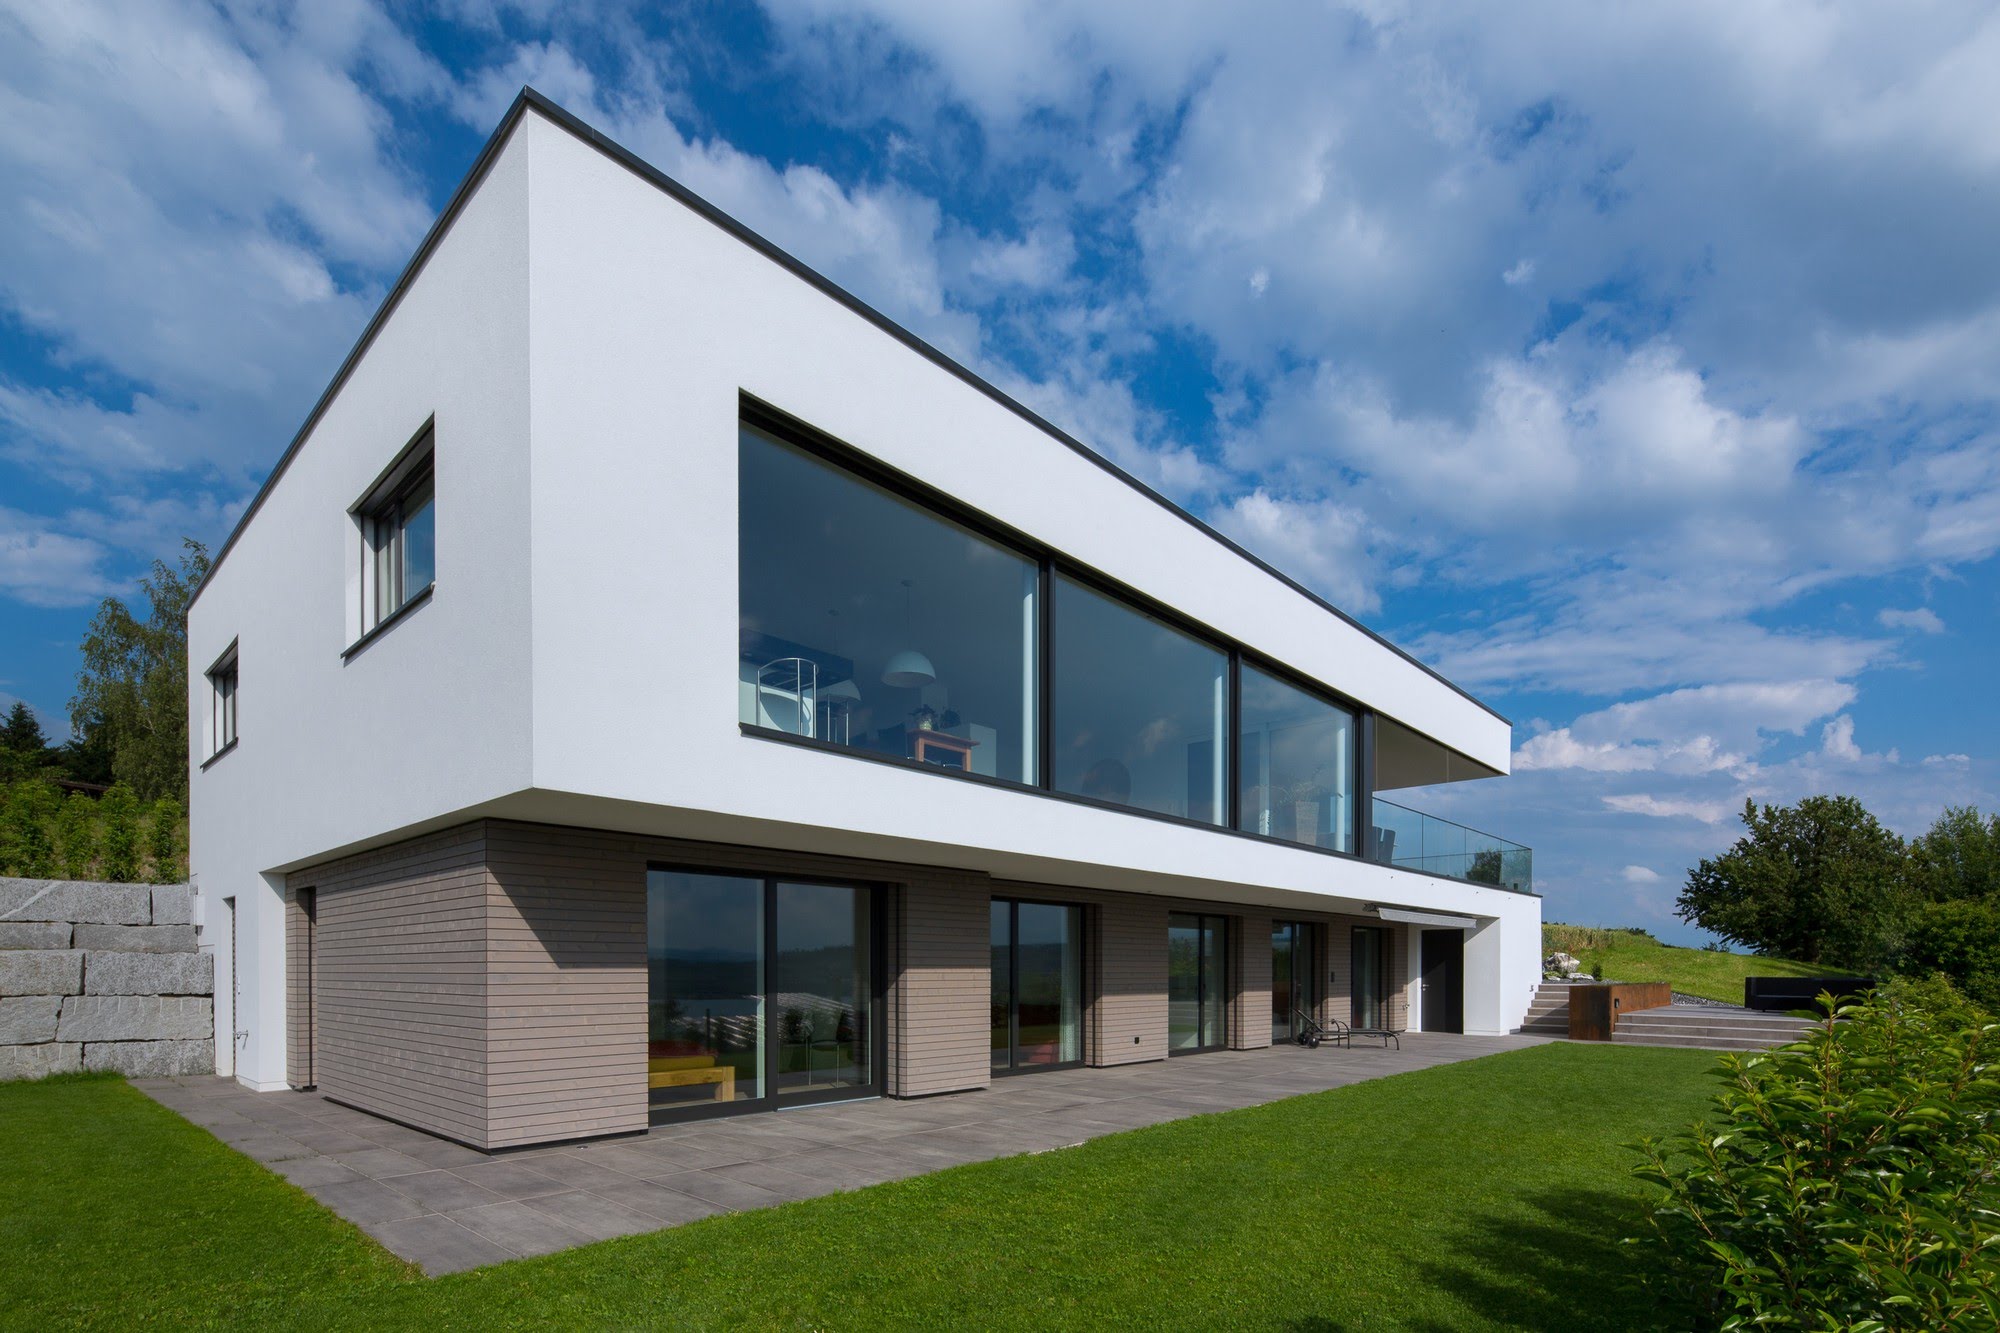 Wohnen EFH EFH 6 Striegelhöhe in Schenkon Architektur,Wohnungsbau,Wohnhäuser,Einfamilienhäuser,Mehrfamilienhäuser